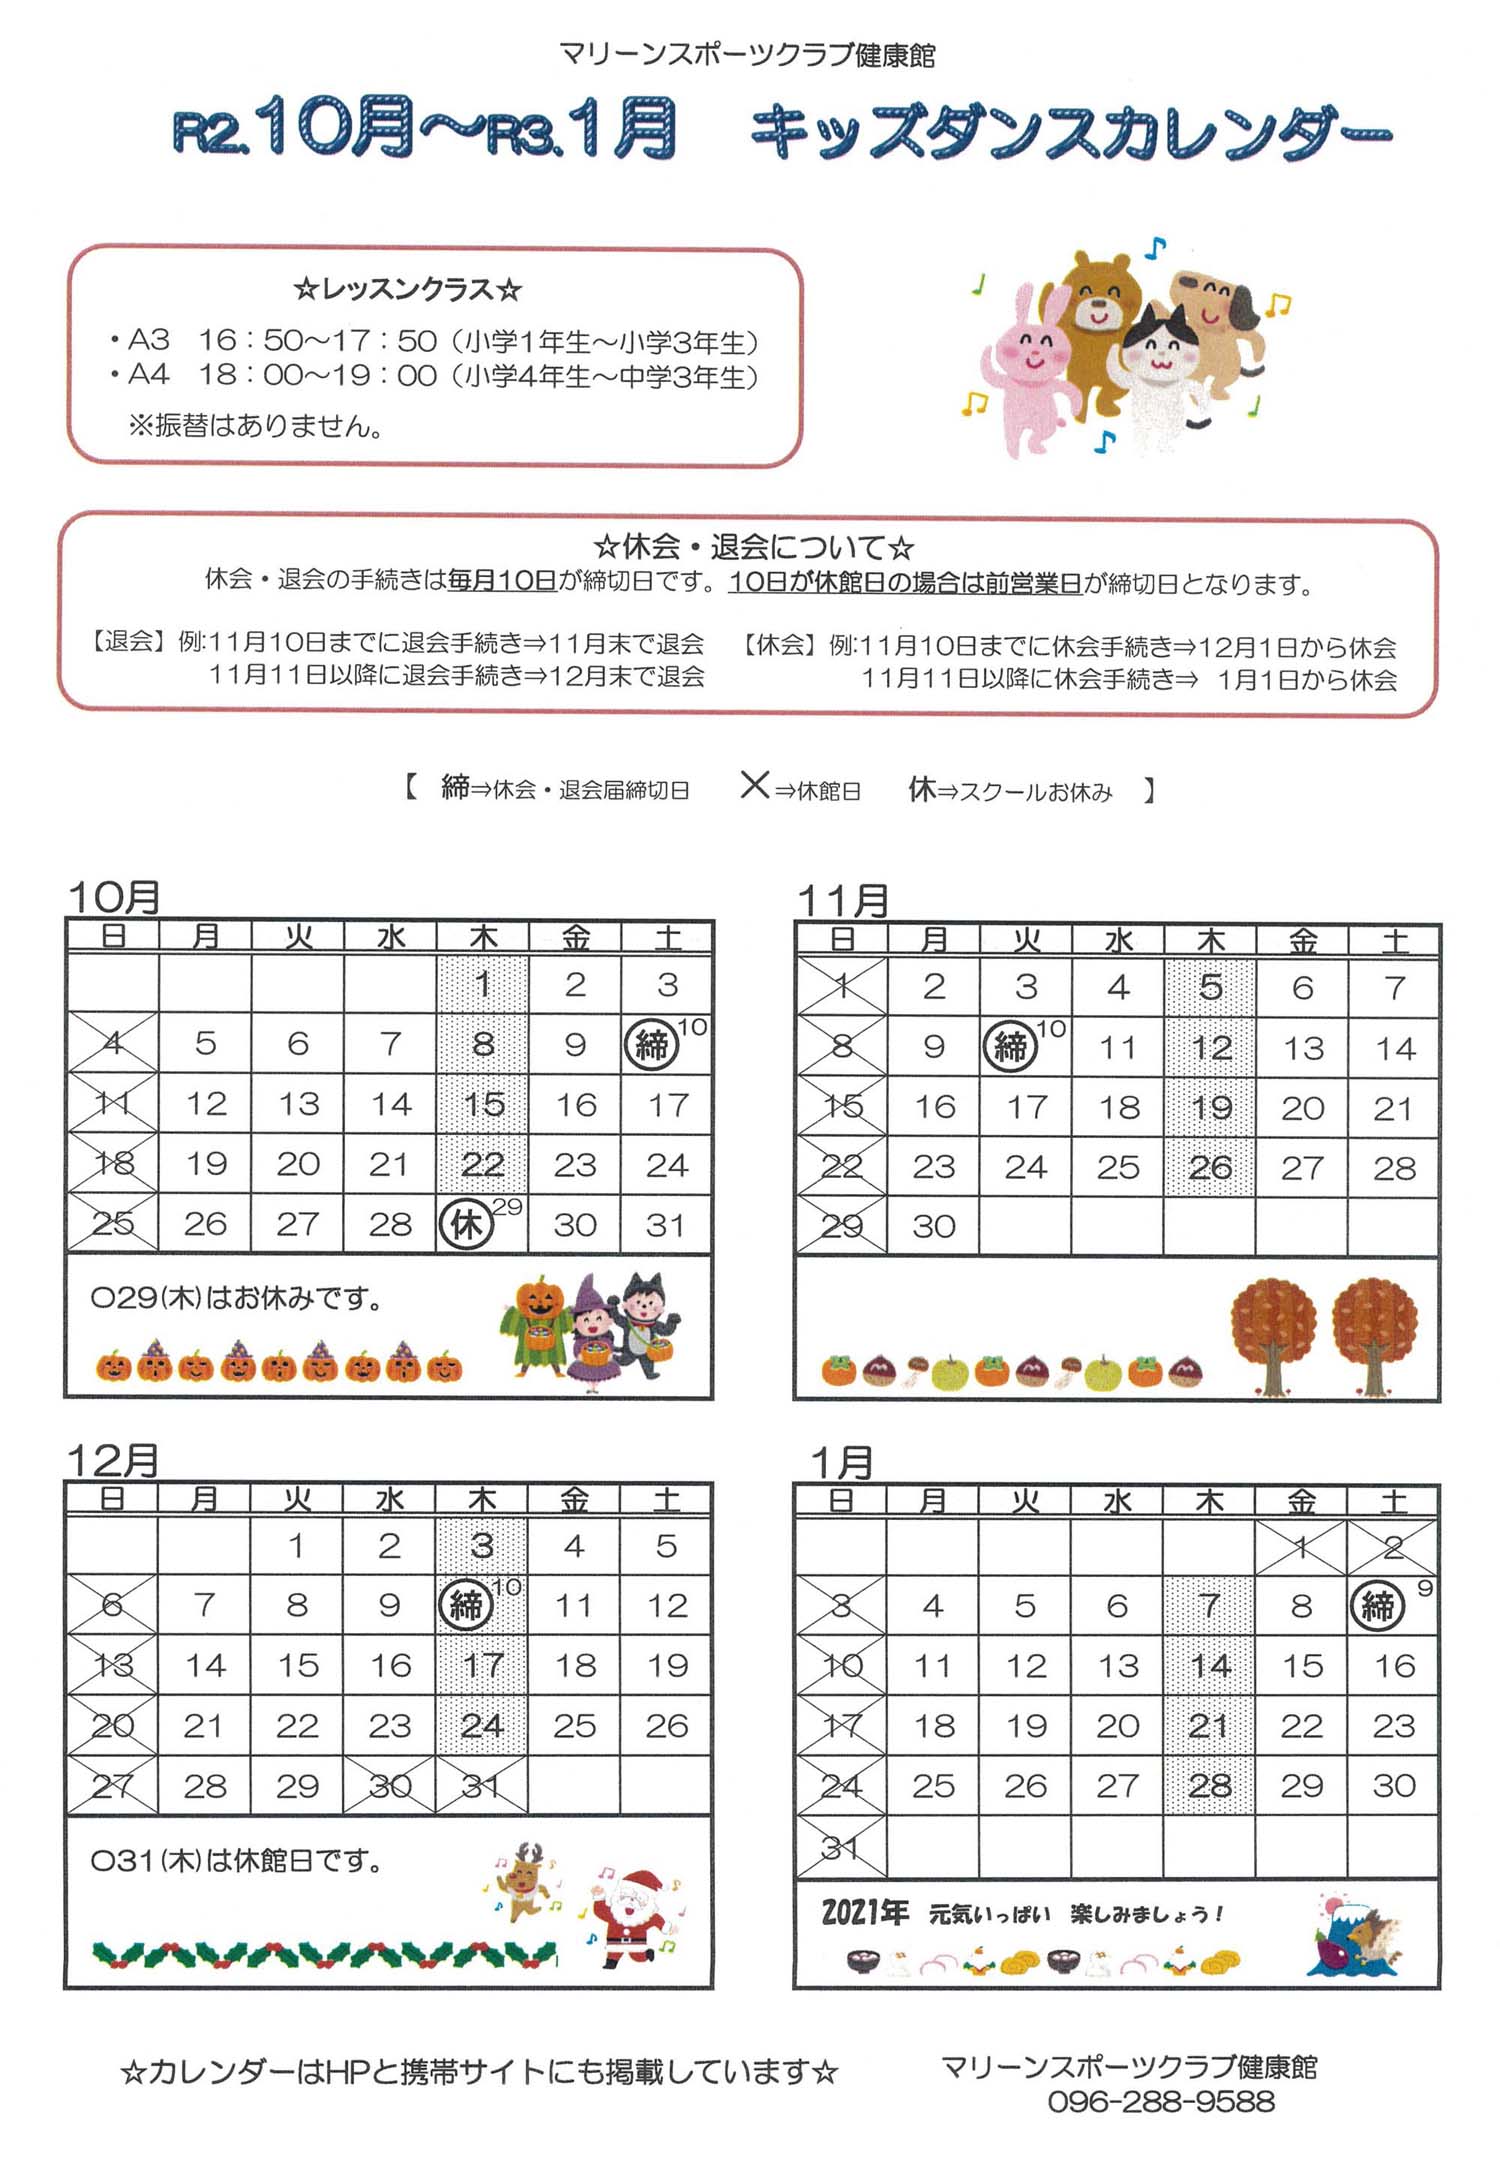 10月 キッズダンス練習カレンダー 熊本 マリーンスポーツクラブ健康館 大津